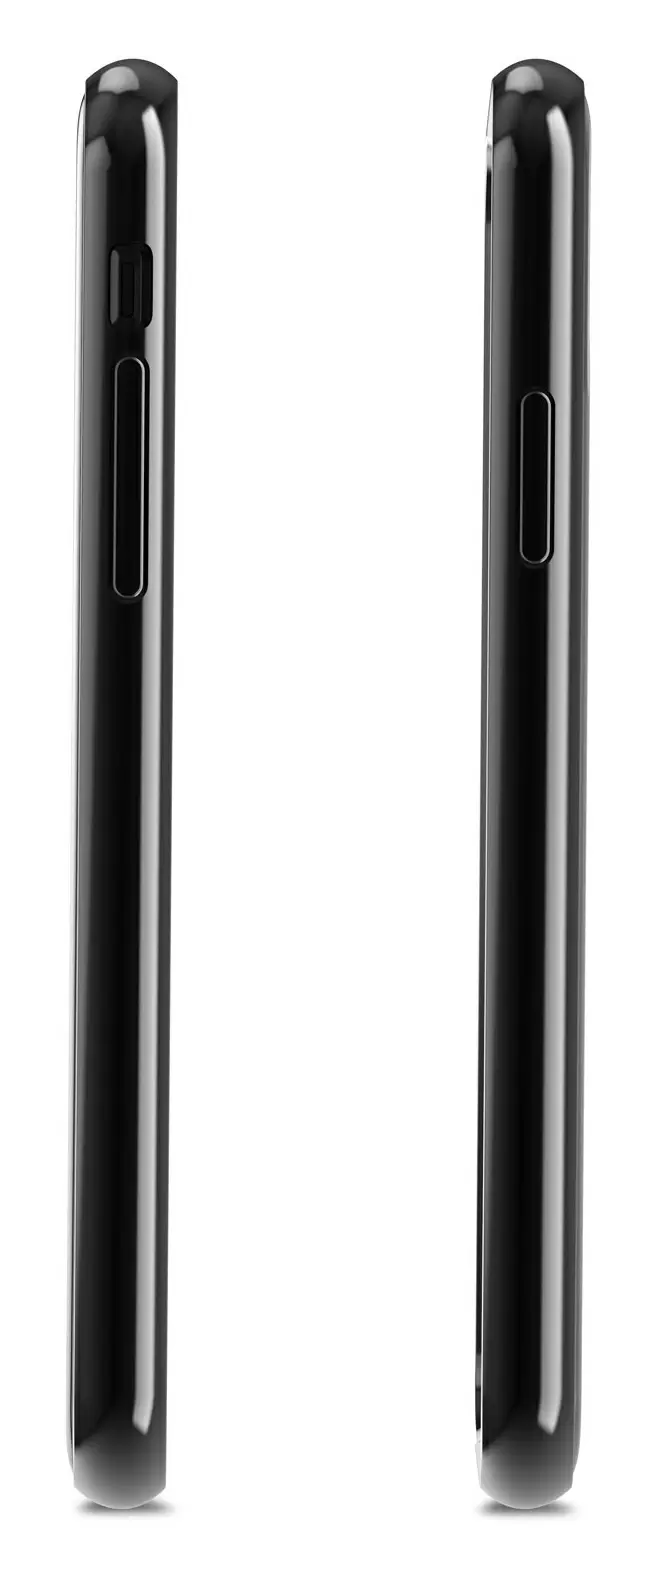 Чехол Moshi Vitros iPhone XS/X, черный